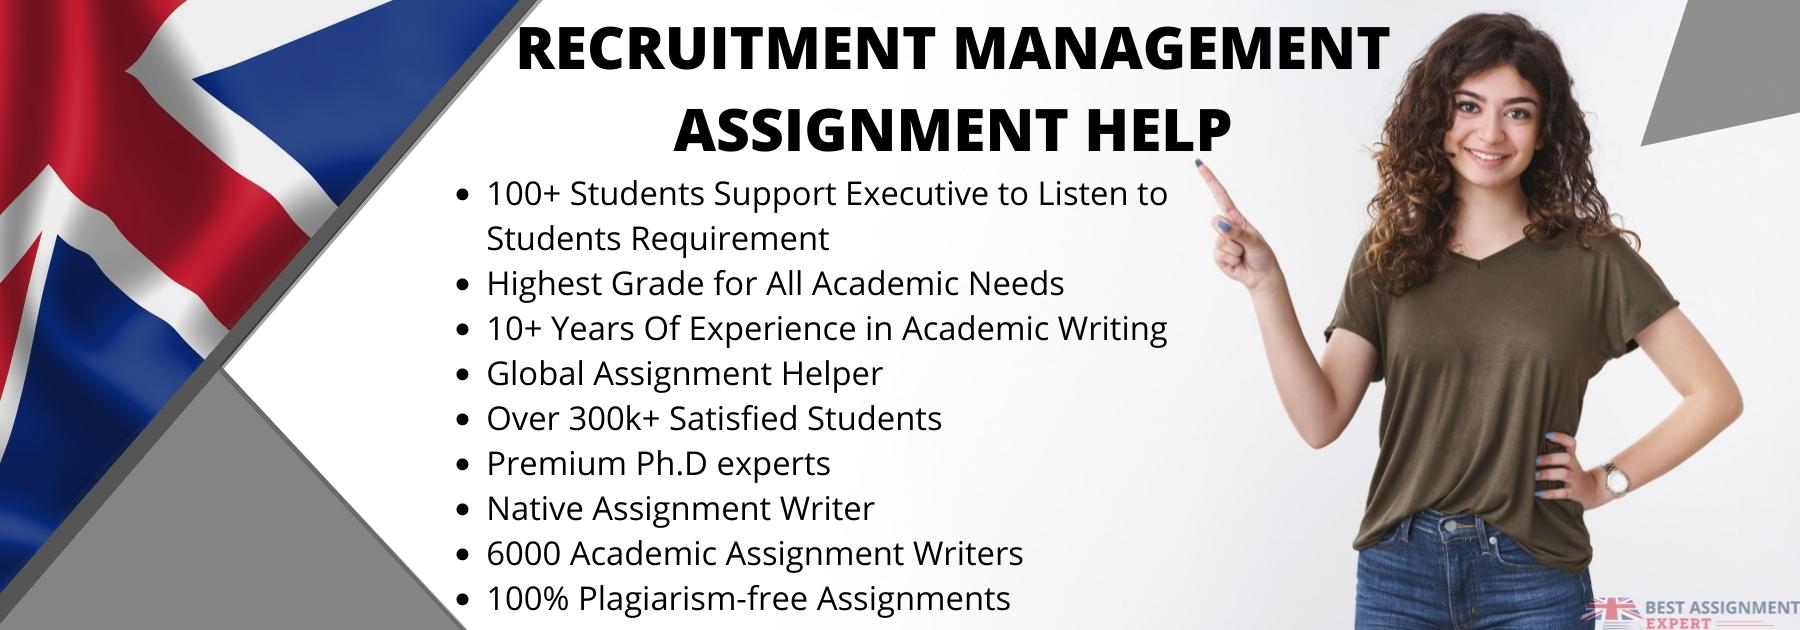 Recruitment Management Assignment Help